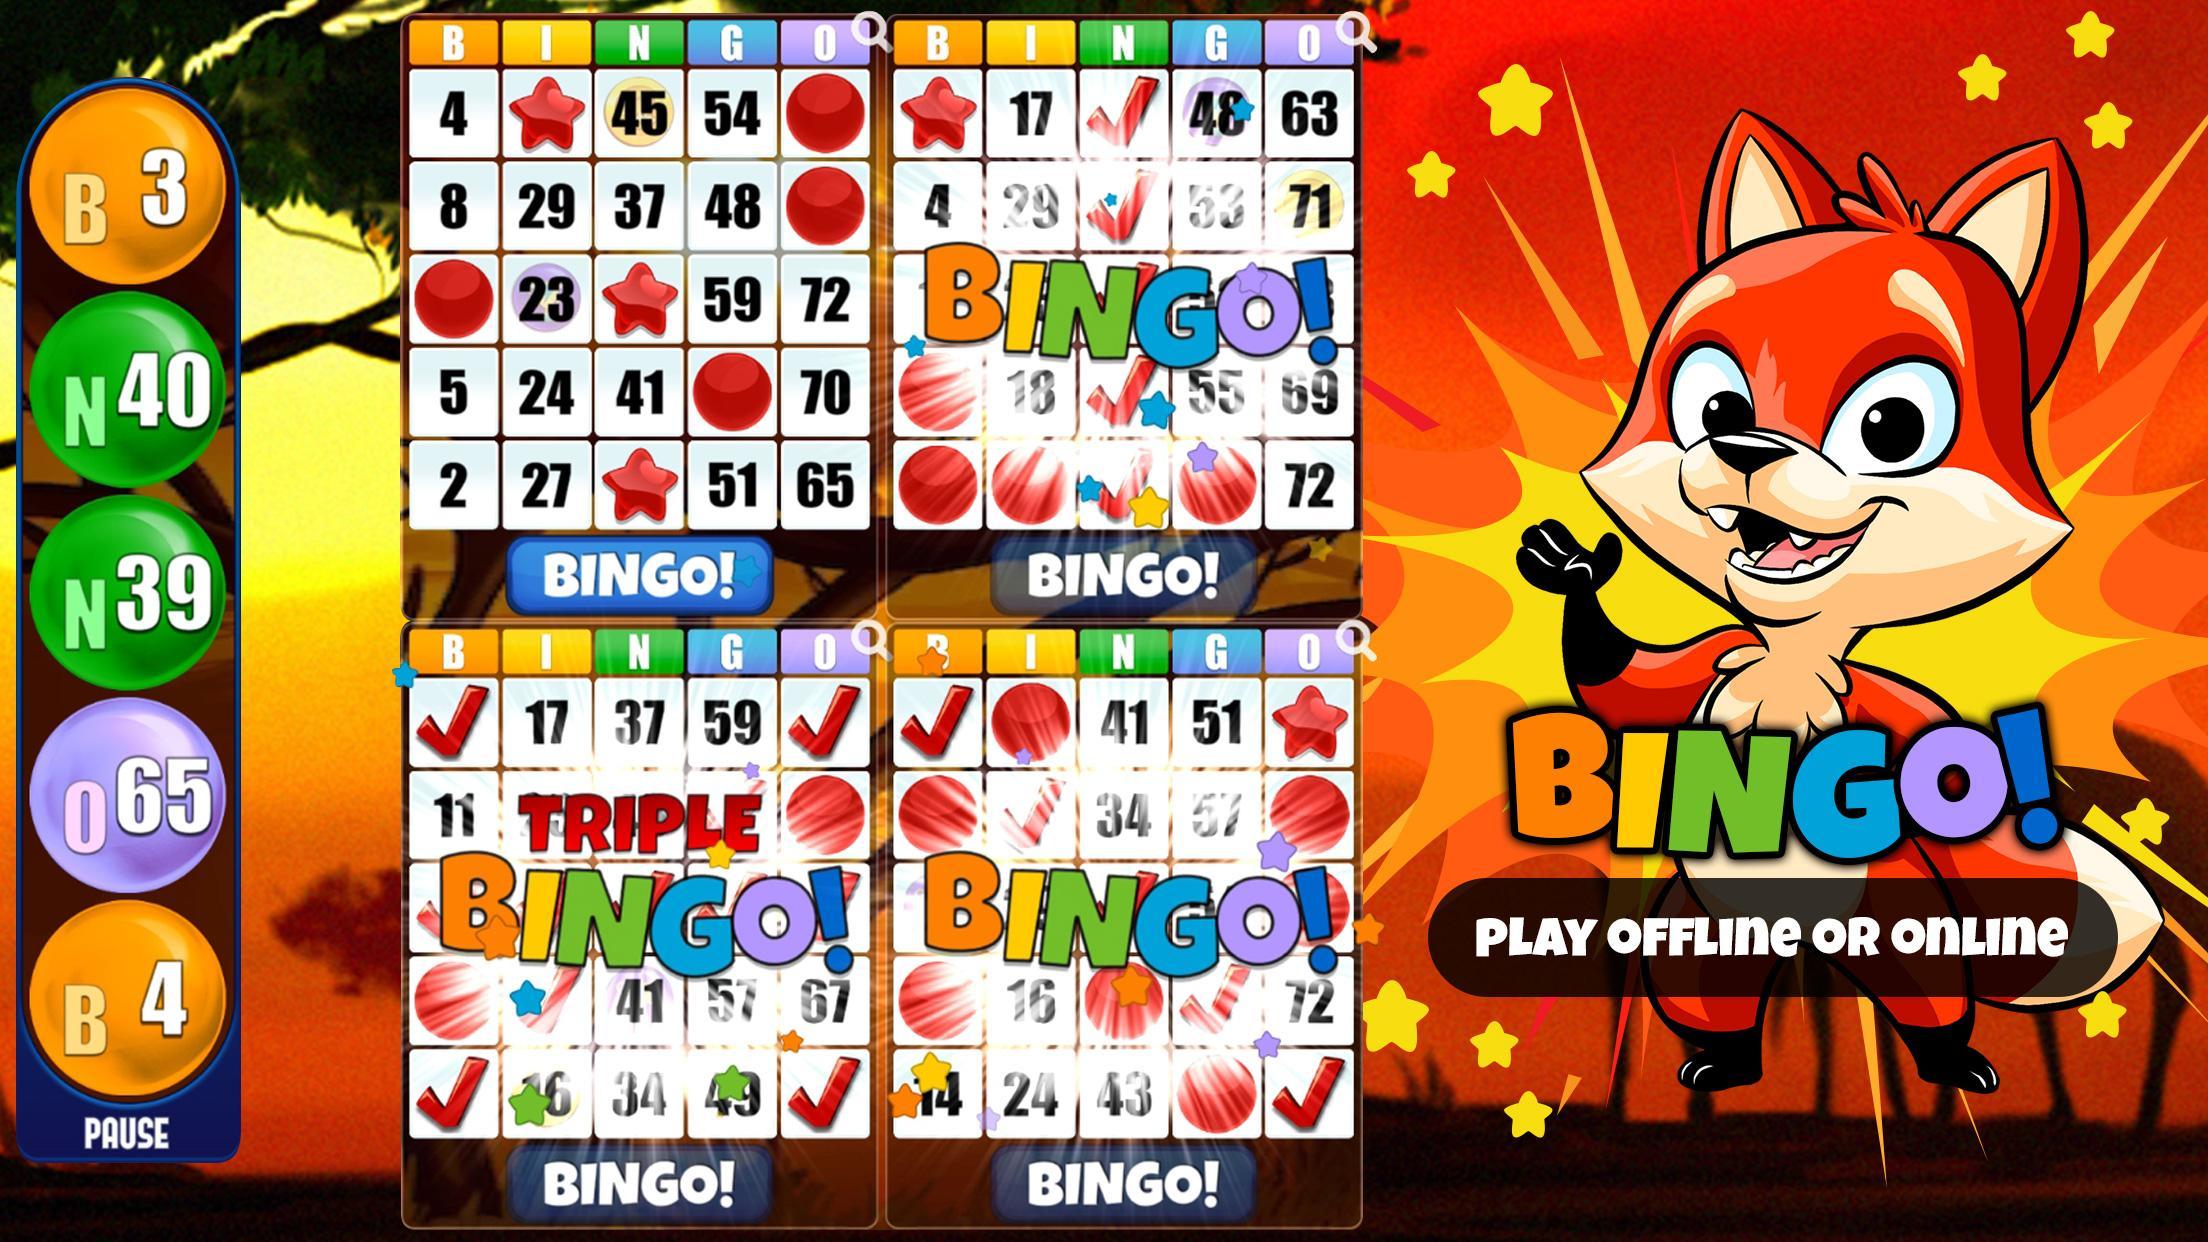 Free Bingo Games Just For Fun